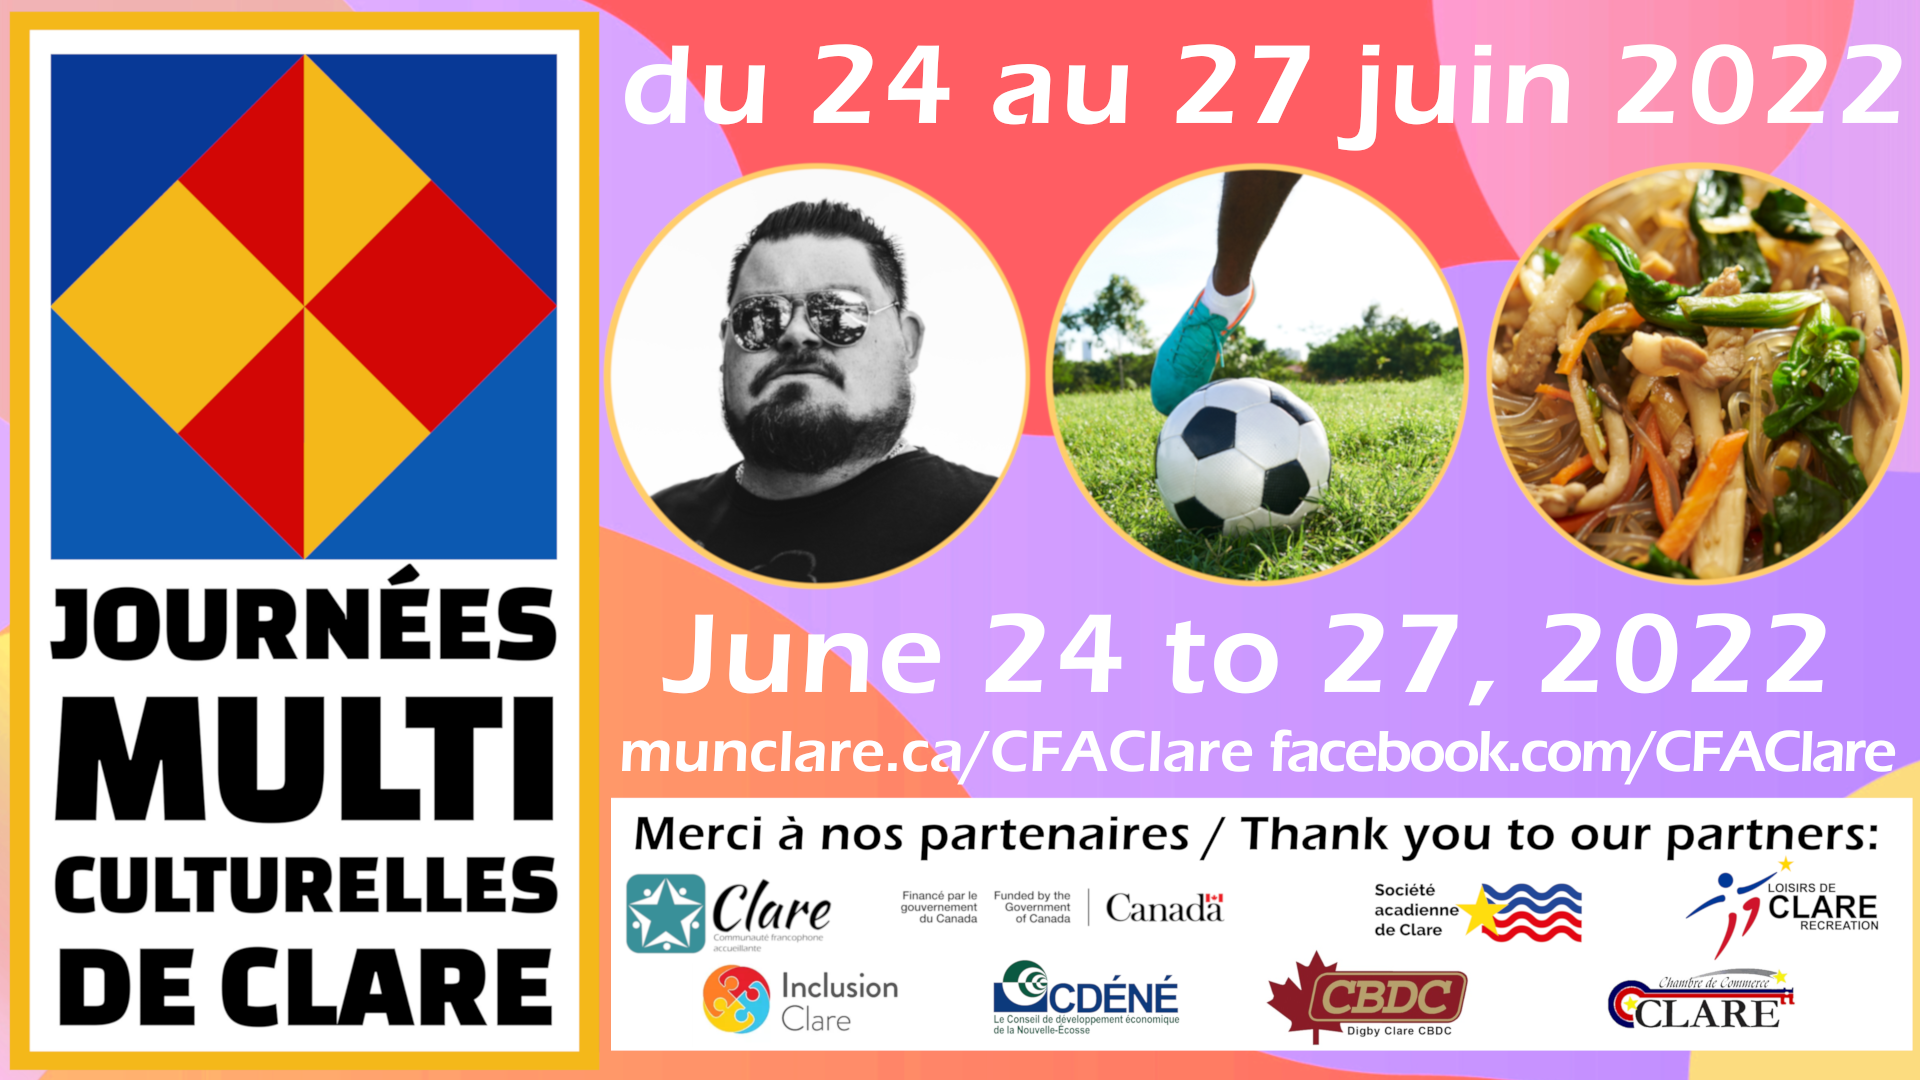 Les journées multiculturelles de Clare, June 24 to 27, 2022